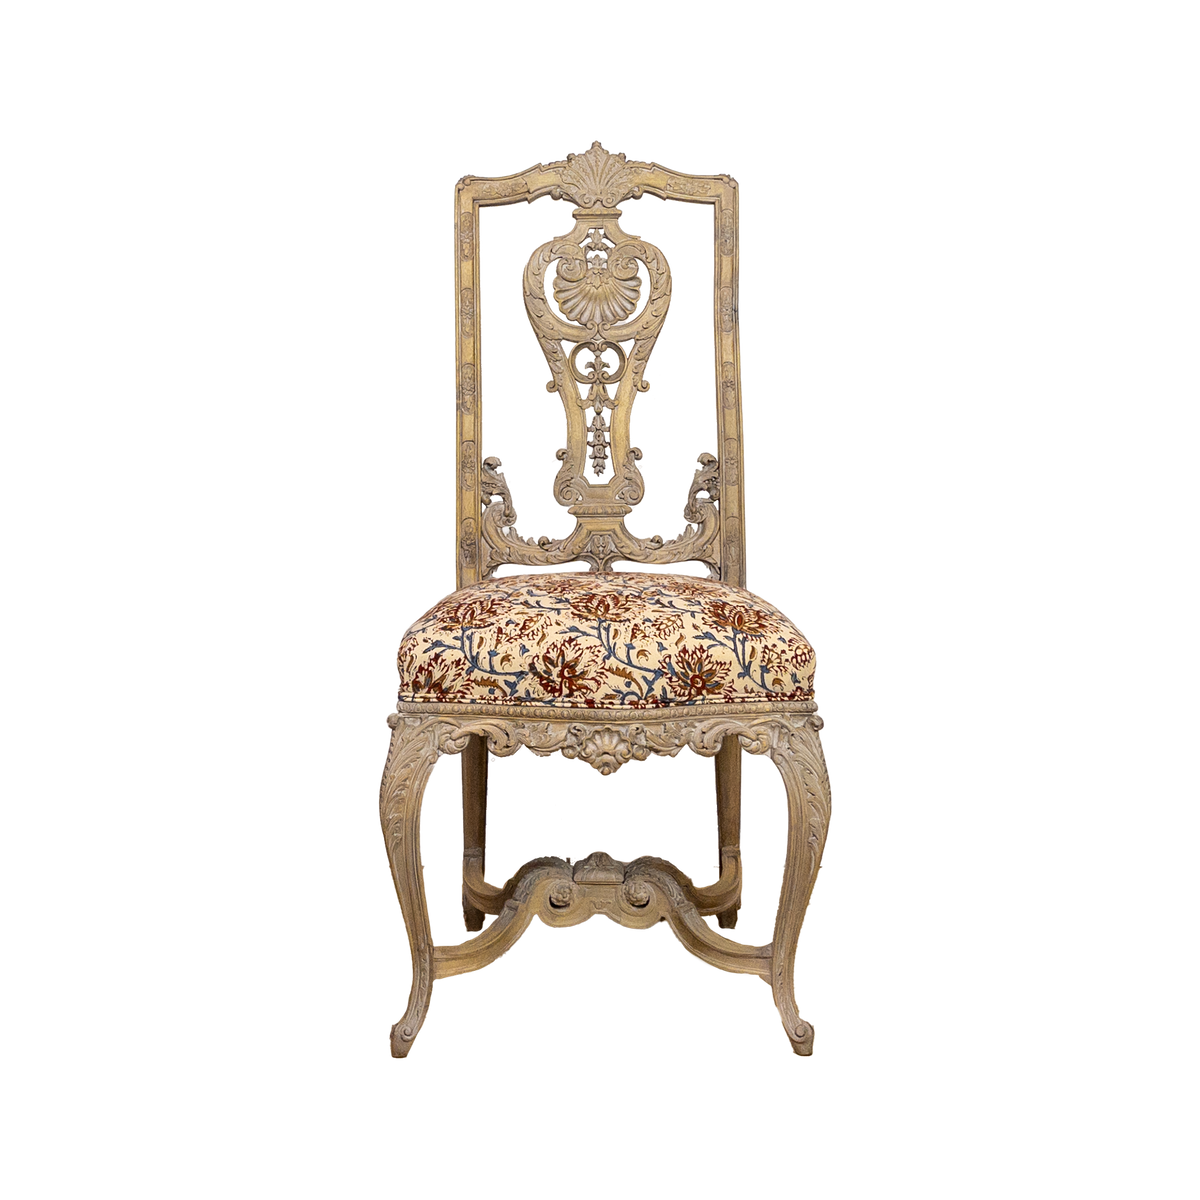 Litt Carved Chair Circa 1860